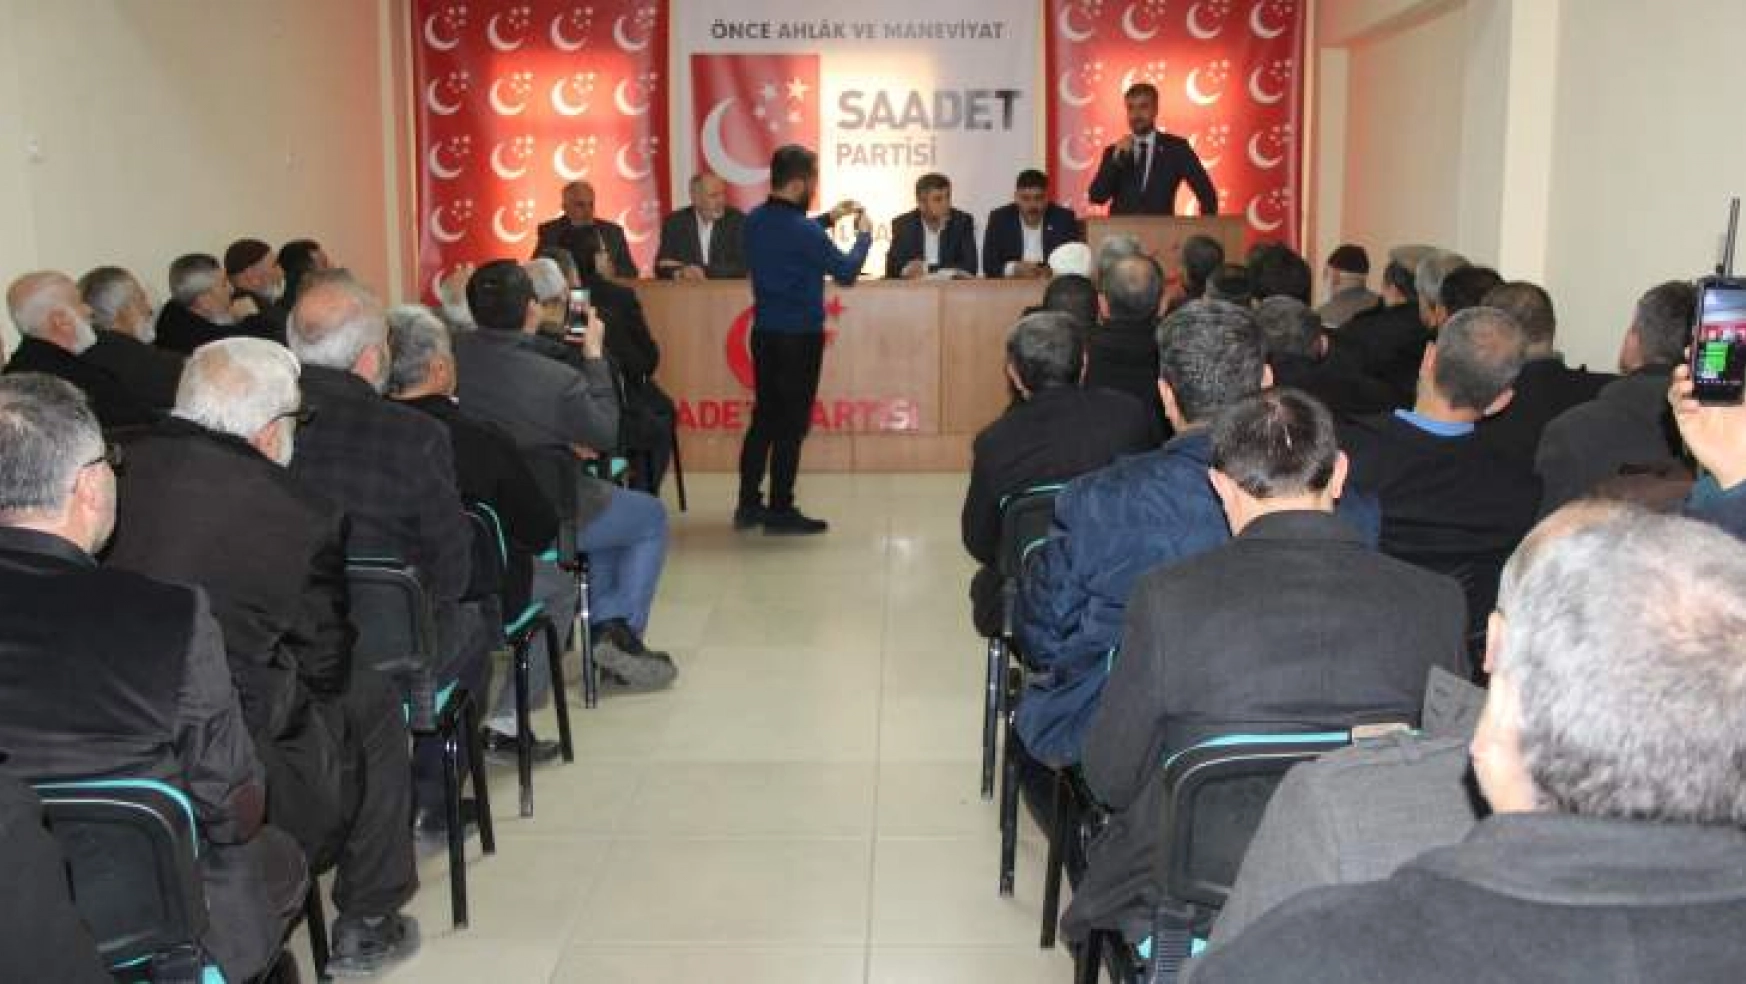 Saadet Partisi Battalgazi ilçe divan toplantısını gerçekleştirdi.